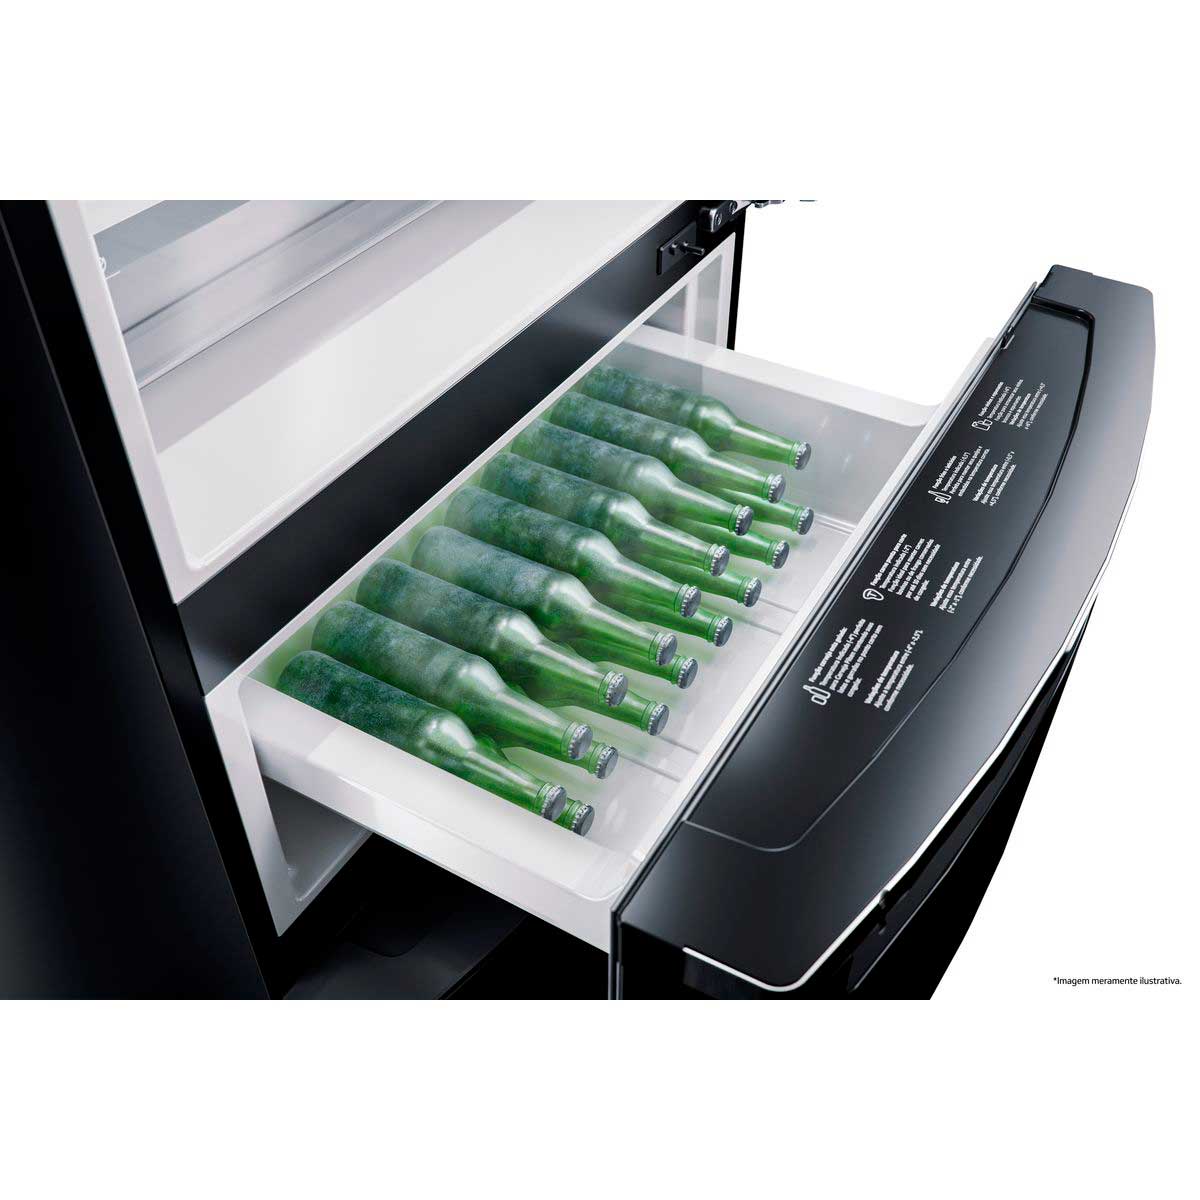 refrigerador-brastemp-frost-free-3-portas-inverse-bry59bk-419-l-inox-220v-8.jpg